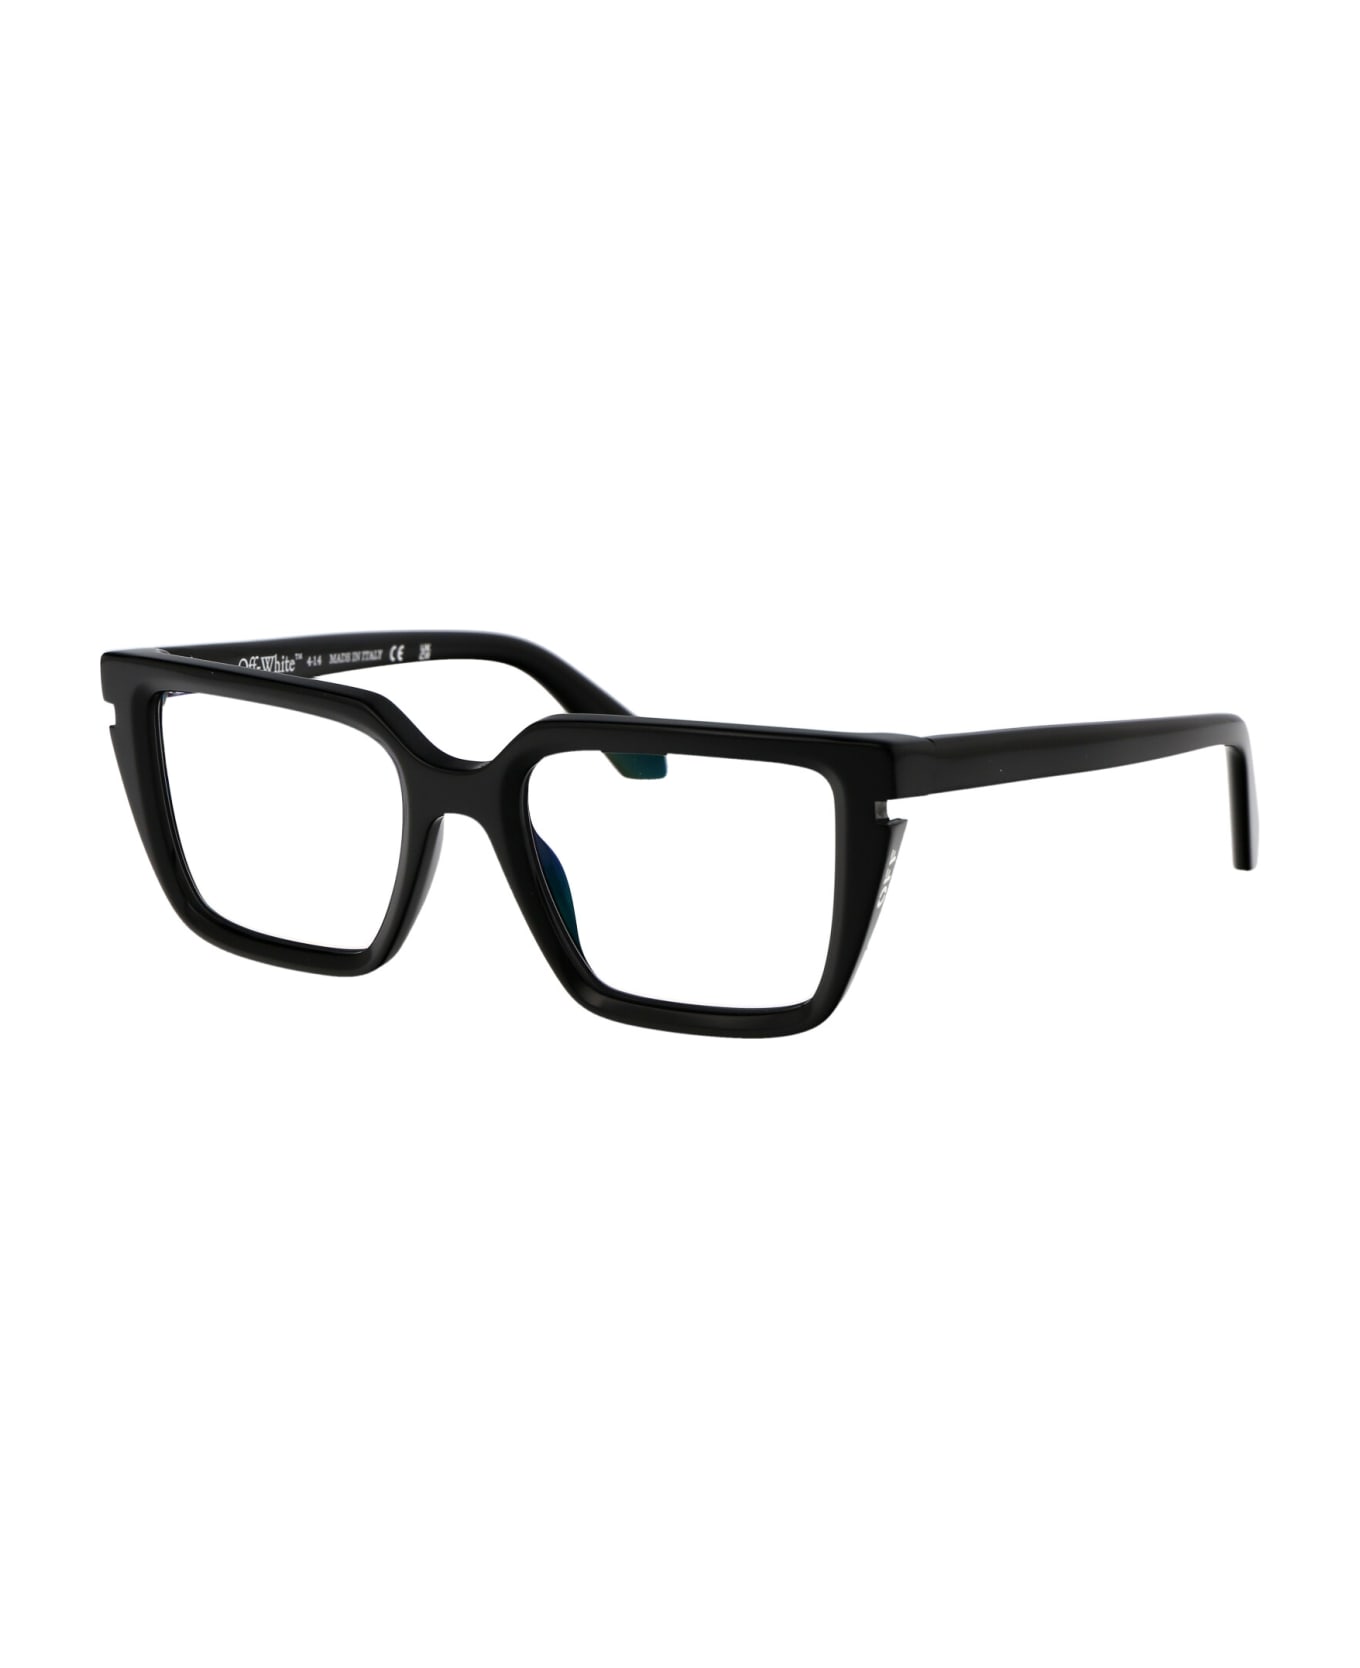 Off-White Optical Style 52 Glasses - 1000 BLACK アイウェア